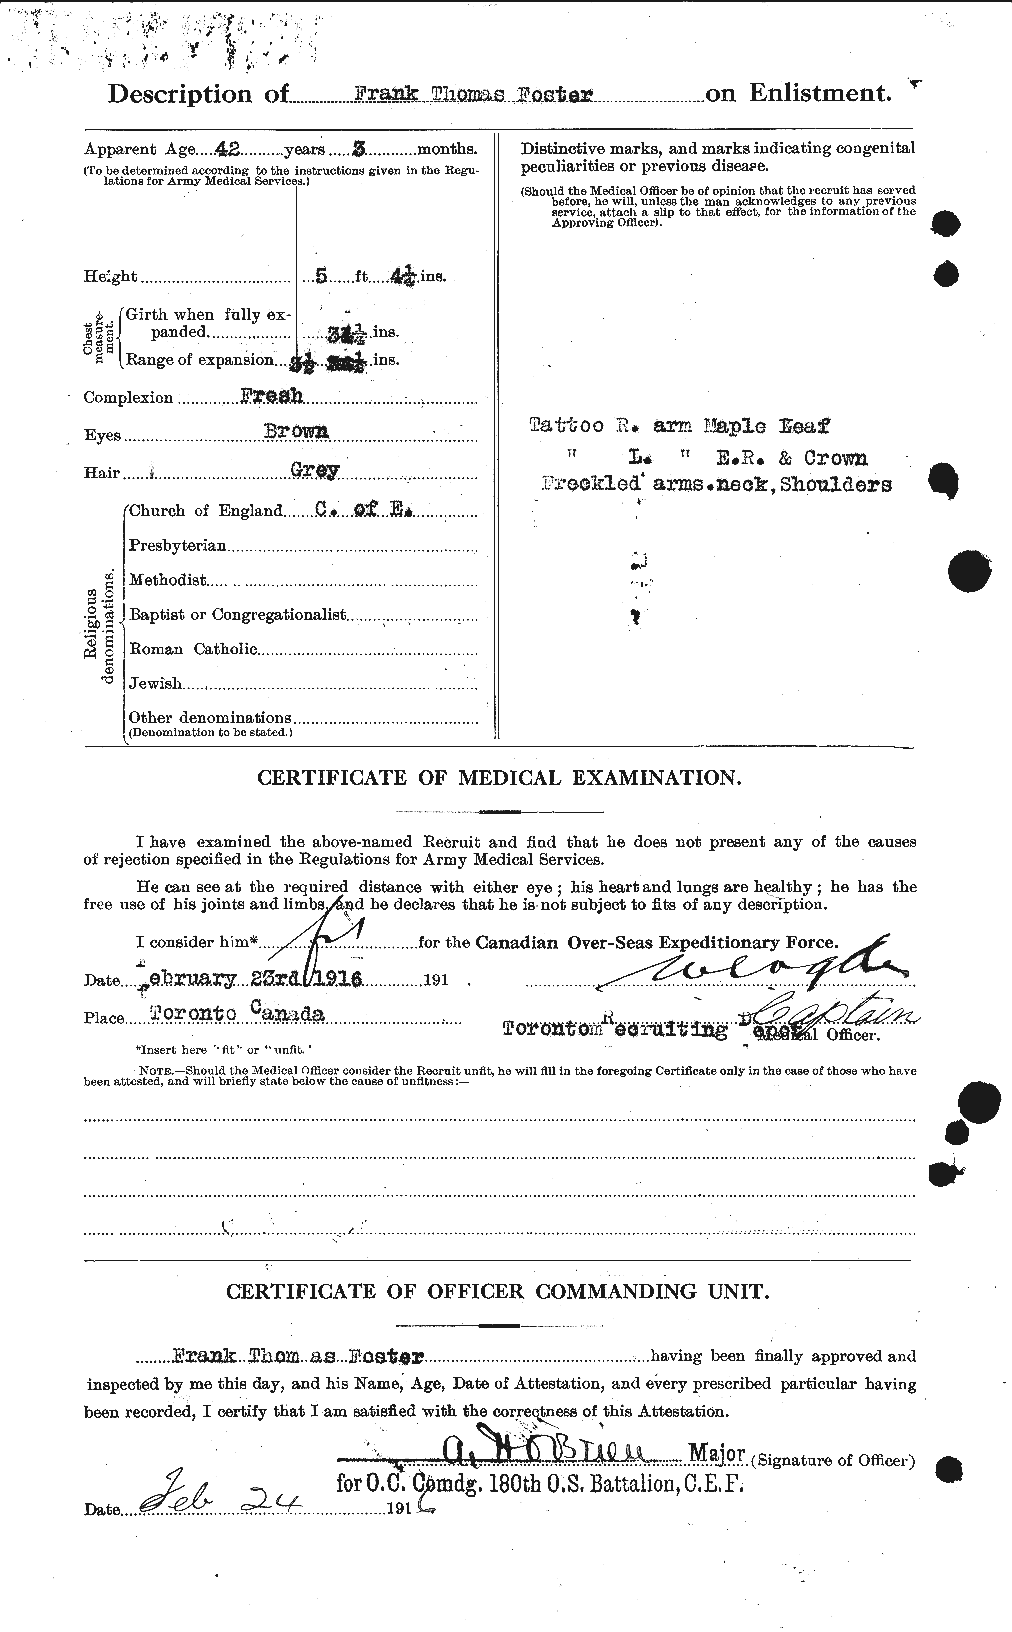 Dossiers du Personnel de la Première Guerre mondiale - CEC 330629b